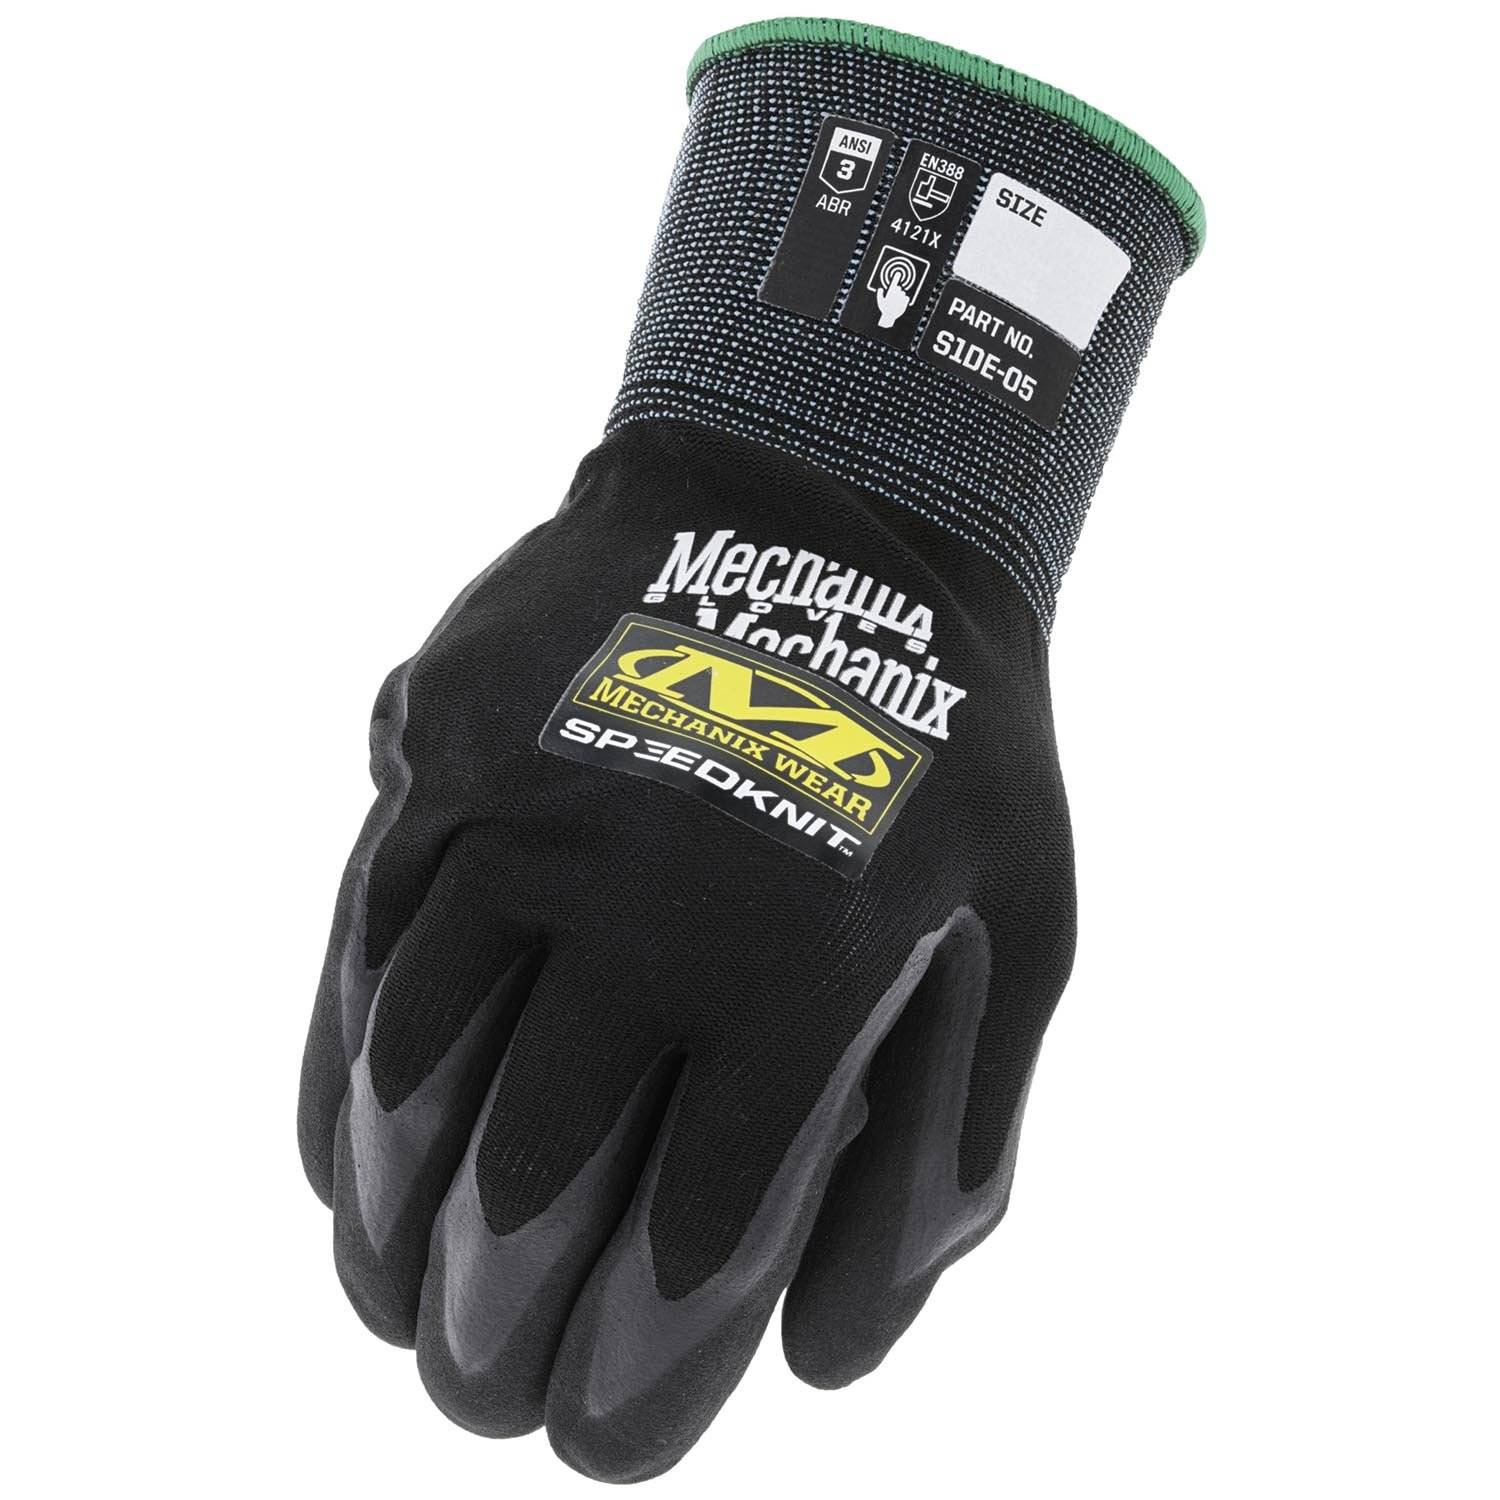 Mechanix Wear Speedknit Utility Work Gloves